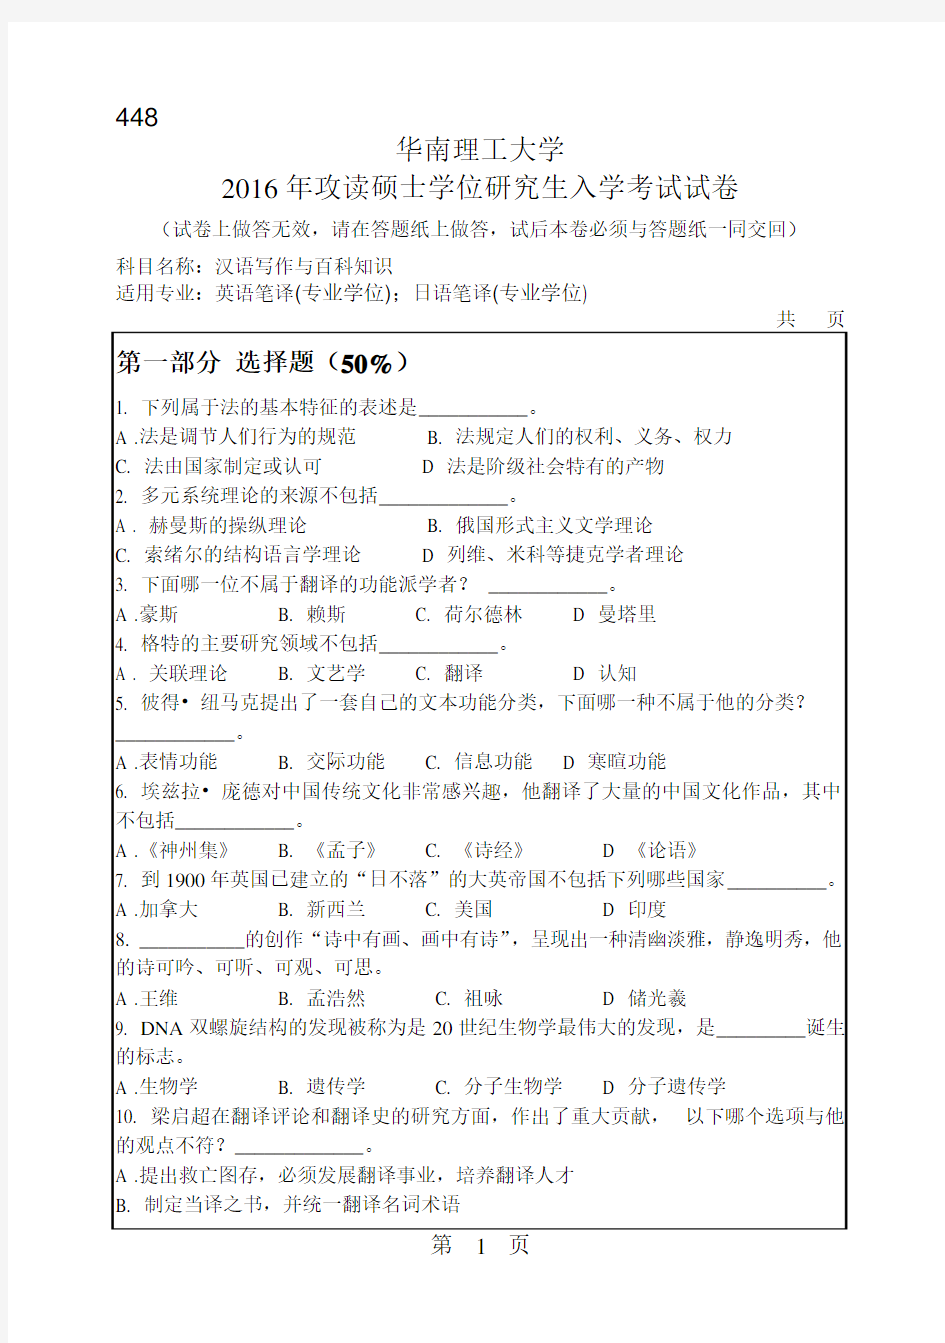 华南理工大学考研试题2016年-2018年448汉语写作与百科知识